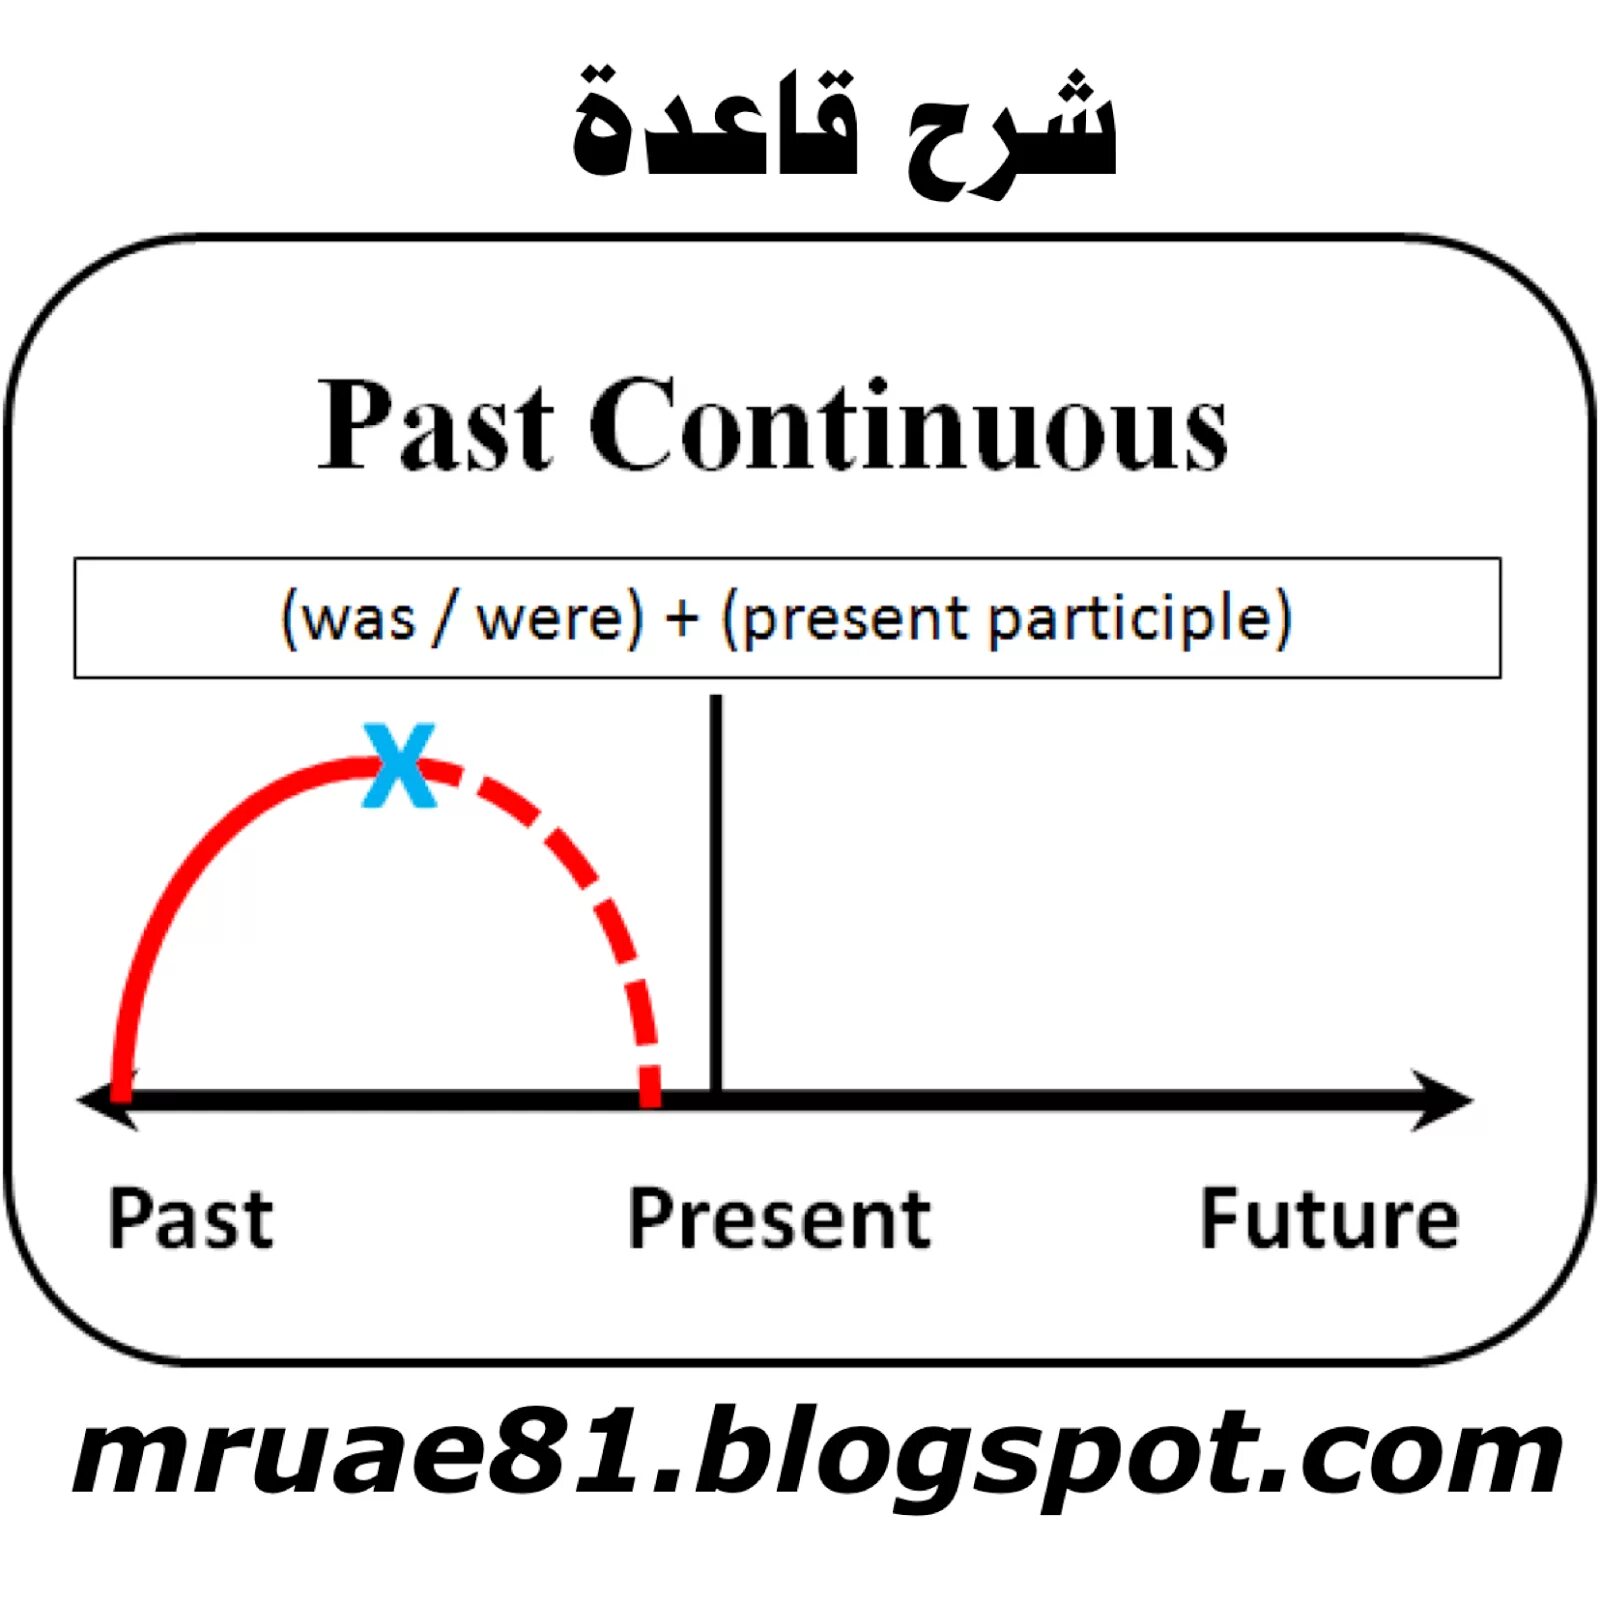 Past continuous tense form. Past Continuous. Past Continuous схема. Past Continuous timeline. Схема простая past Continuous.